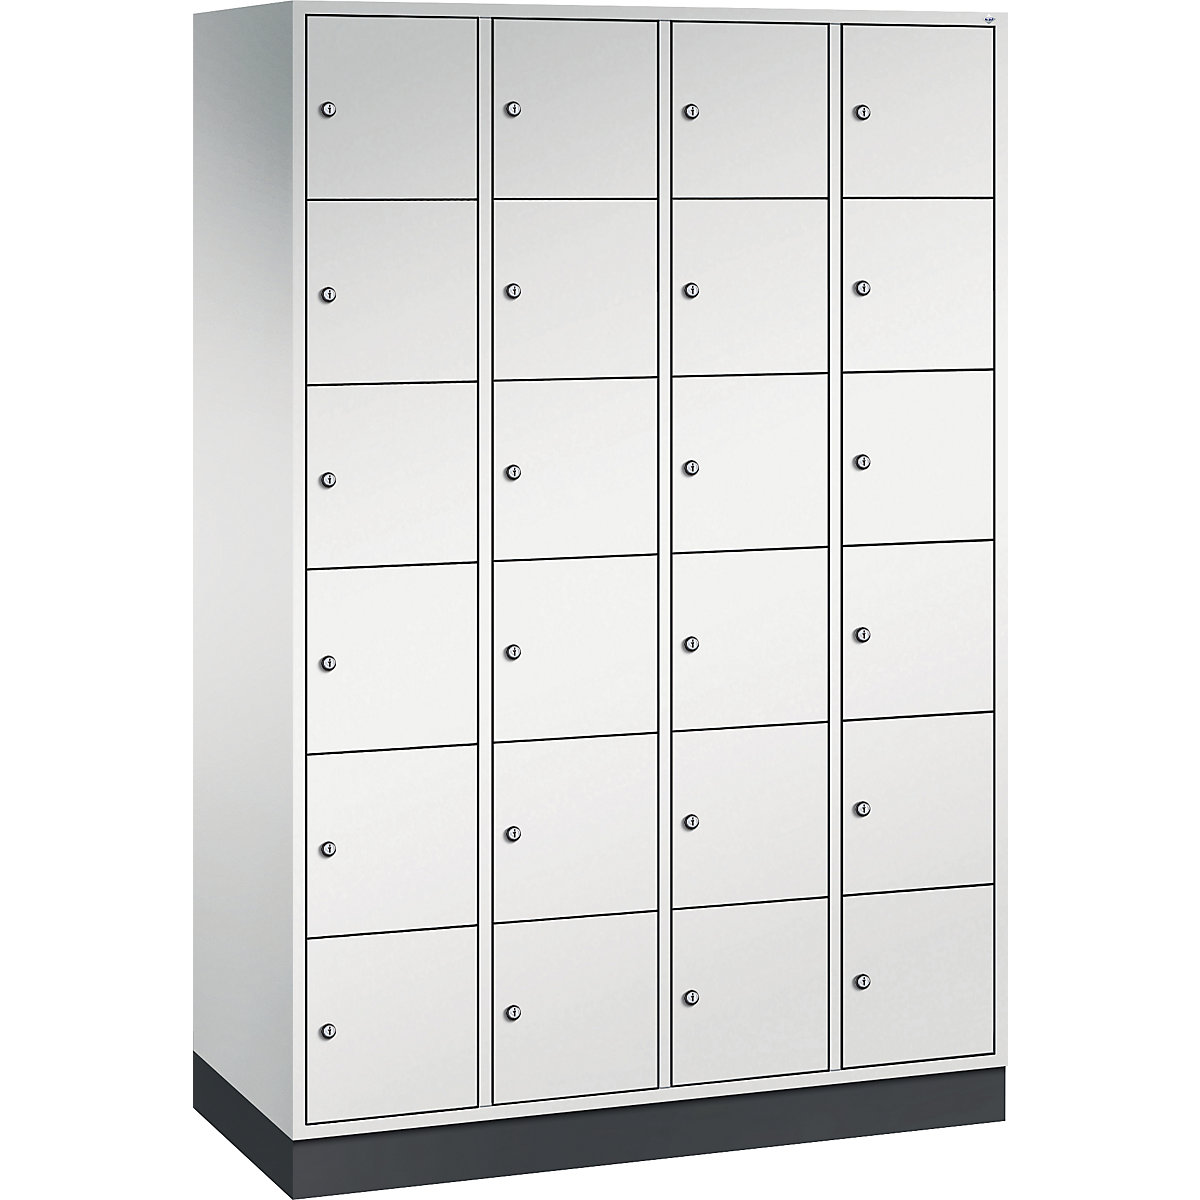 Vestiaire multicases en acier INTRO, casiers hauteur 285 mm – C+P, l x p 1220 x 500 mm, 24 casiers, corps gris clair, portes gris clair-3